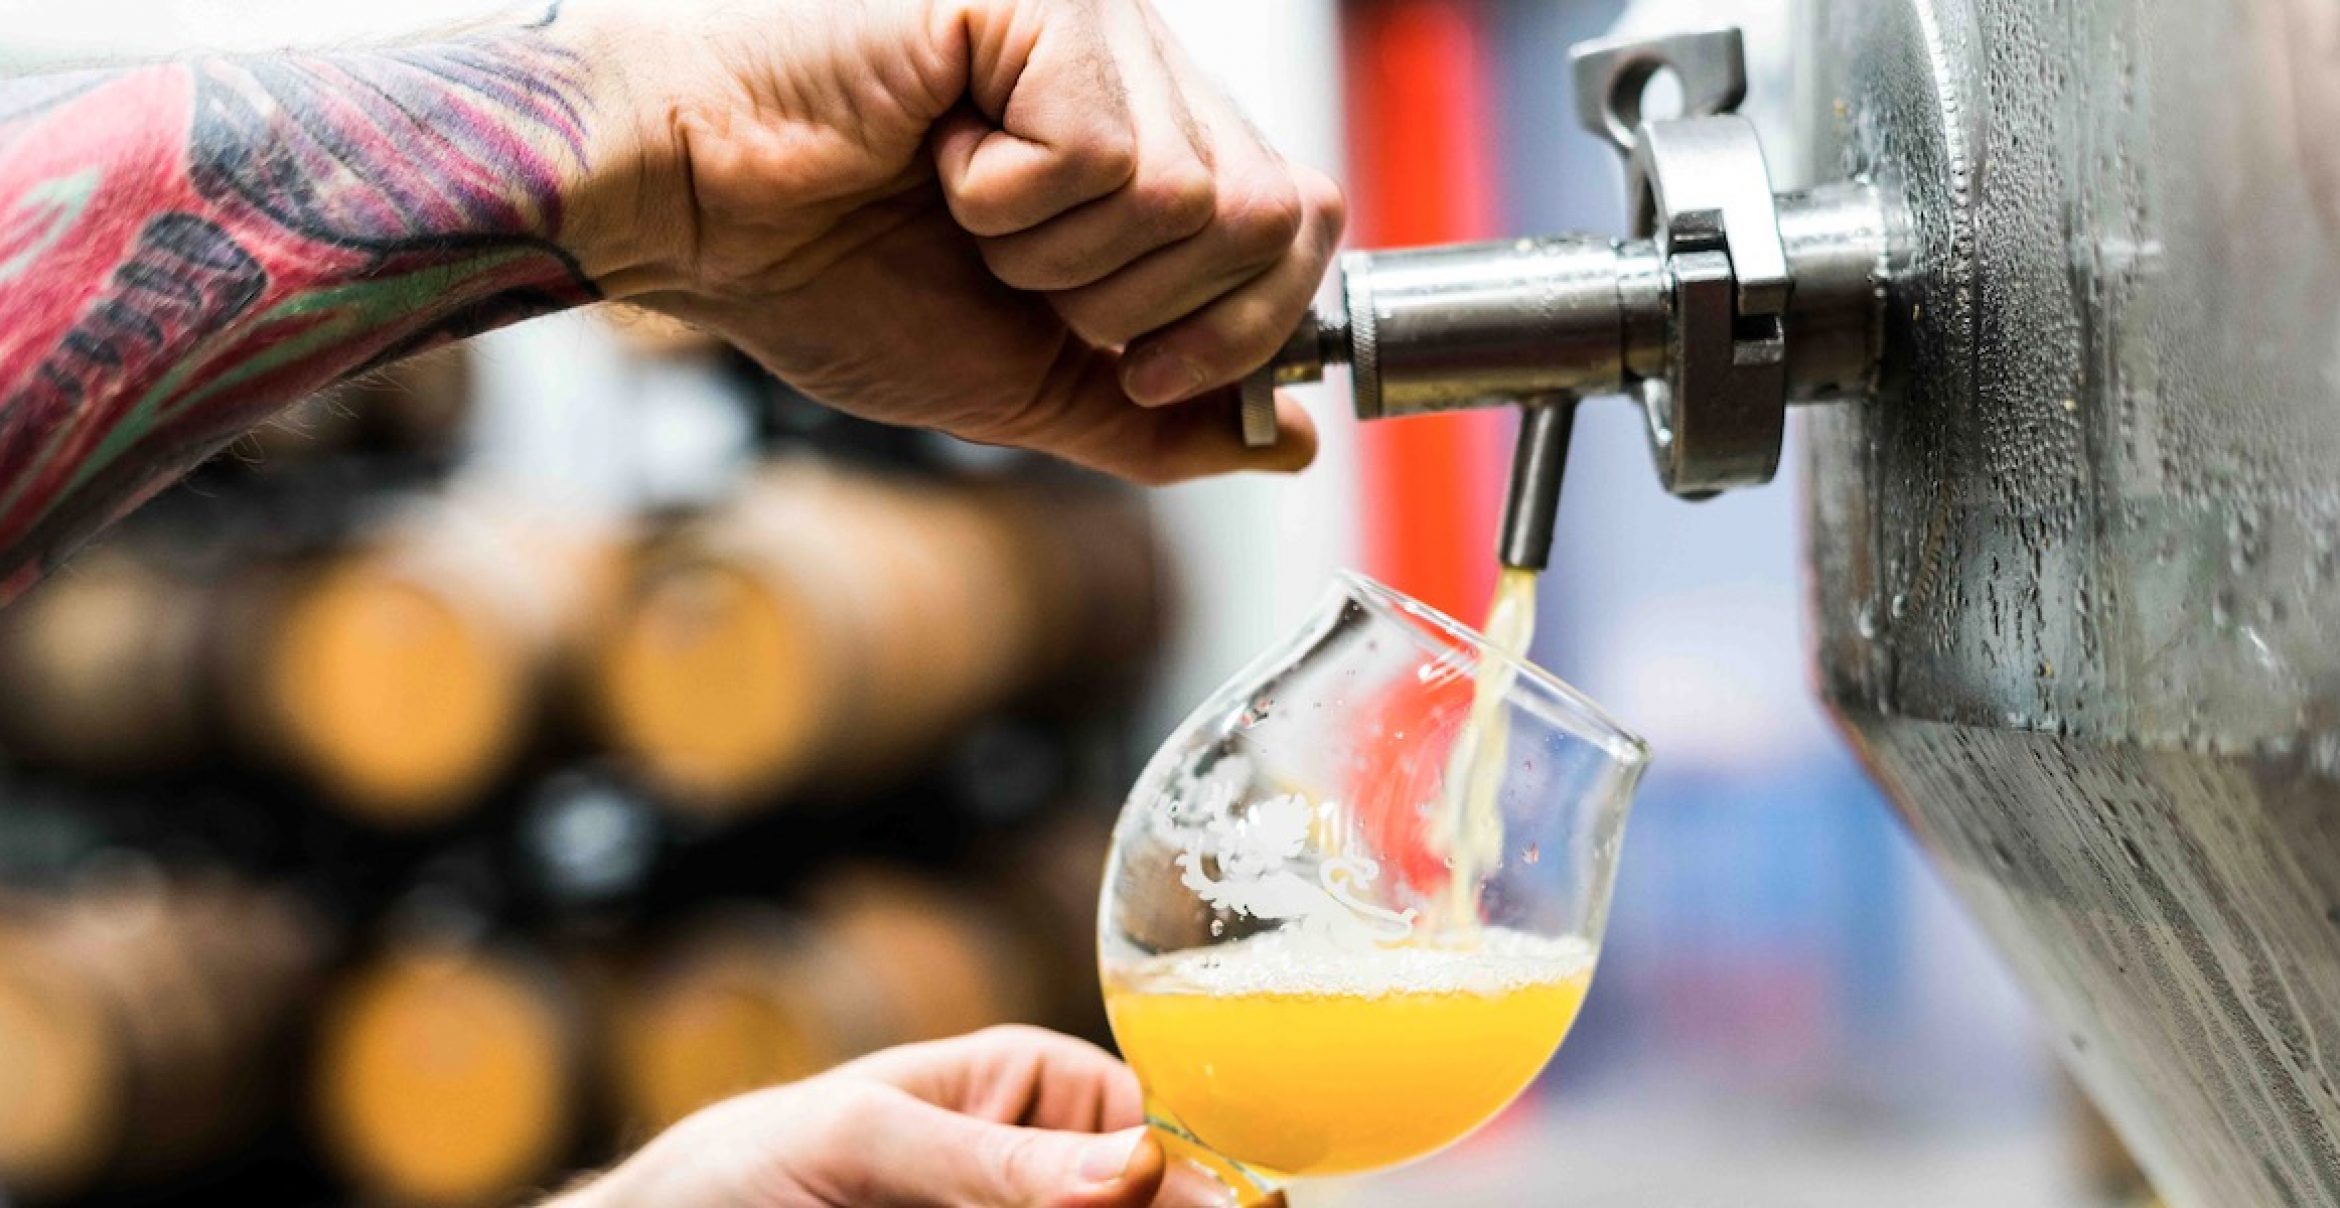 Bier wird wegen Corona-Lockdown schlecht: So innovativ reagieren Brauereien aus vier Ländern